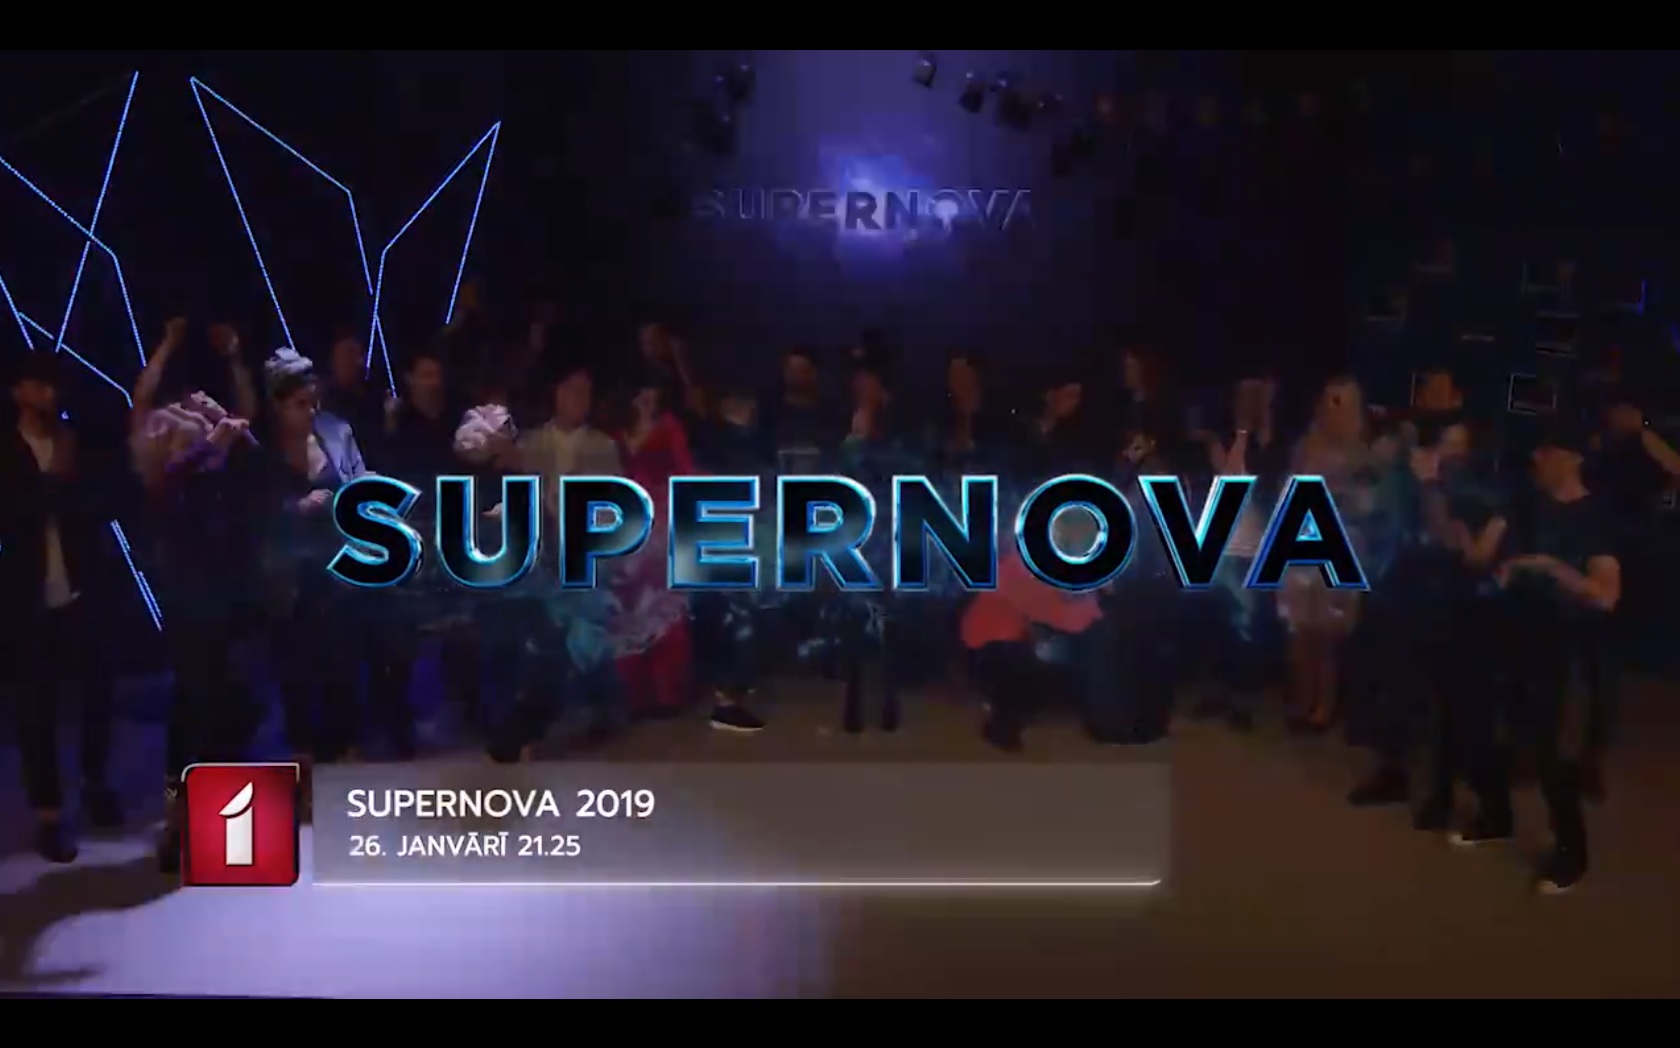  Supernova 2019 (Letónia) começa a 26 de janeiro; final deverá ser a 16 de fevereiro